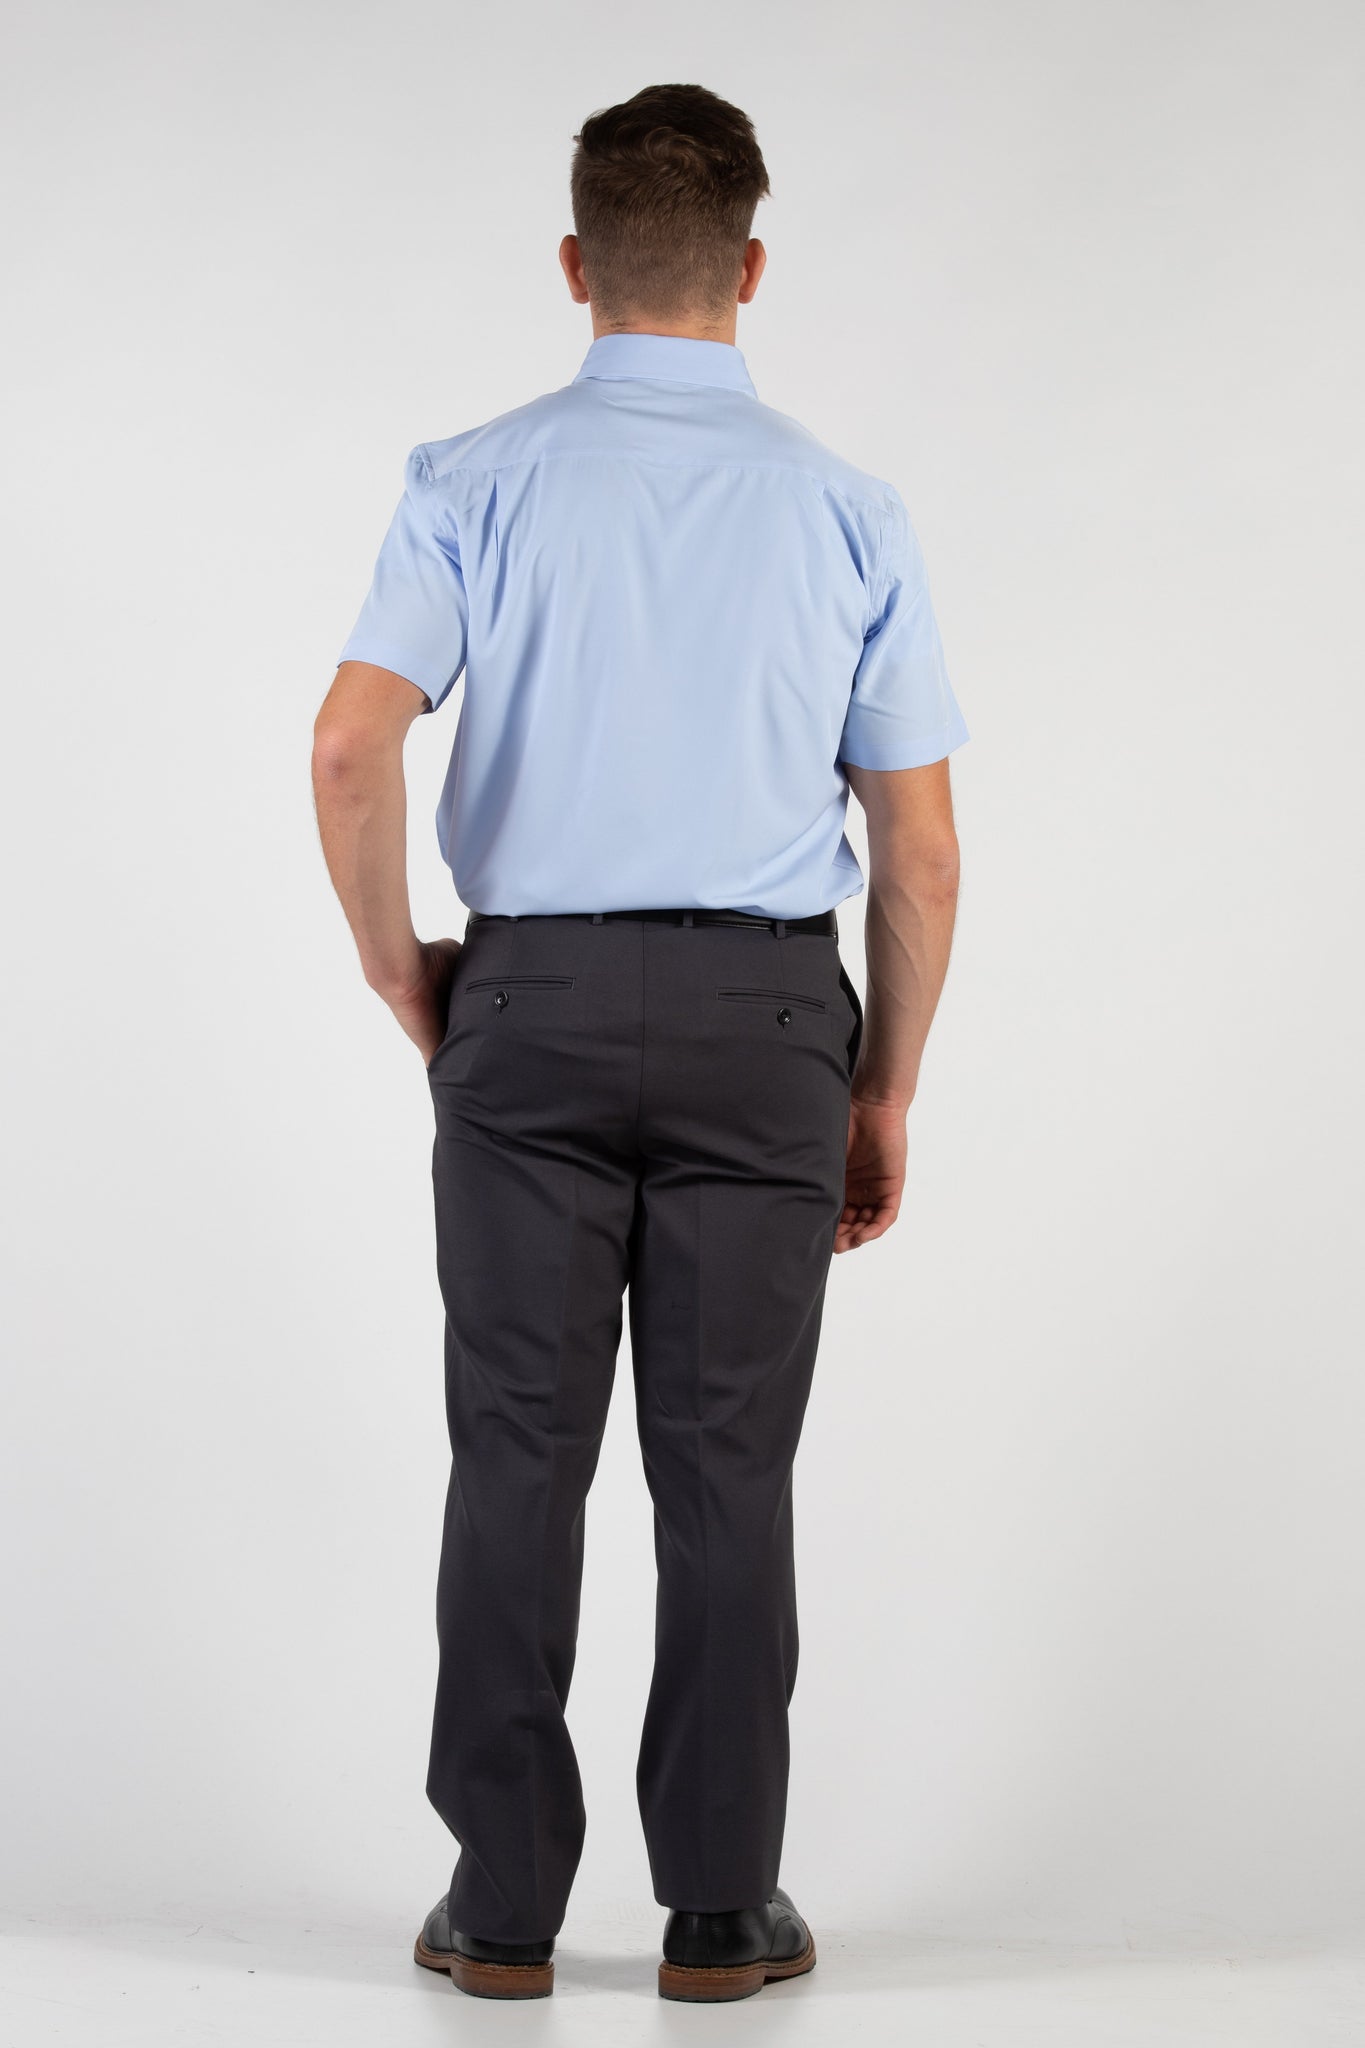 Robbins & Brooks 4-Way Flex Blue Dress Shirt Short Sleeve